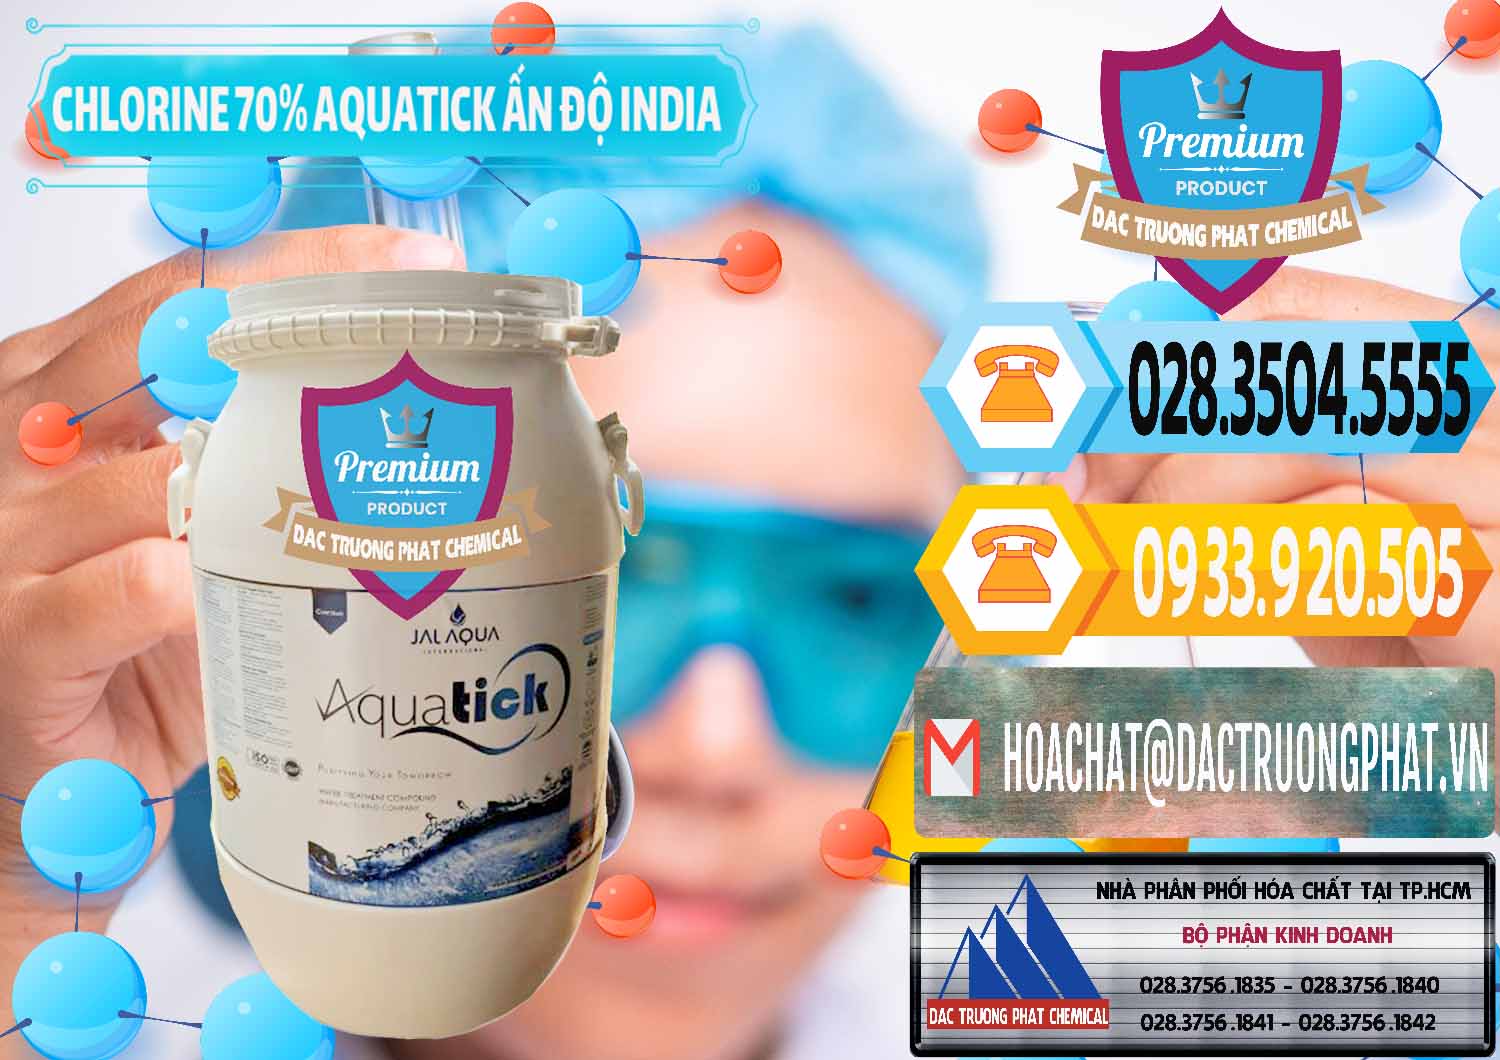 Đơn vị phân phối và bán Chlorine – Clorin 70% Aquatick Jal Aqua Ấn Độ India - 0215 - Công ty phân phối & cung cấp hóa chất tại TP.HCM - hoachattayrua.net